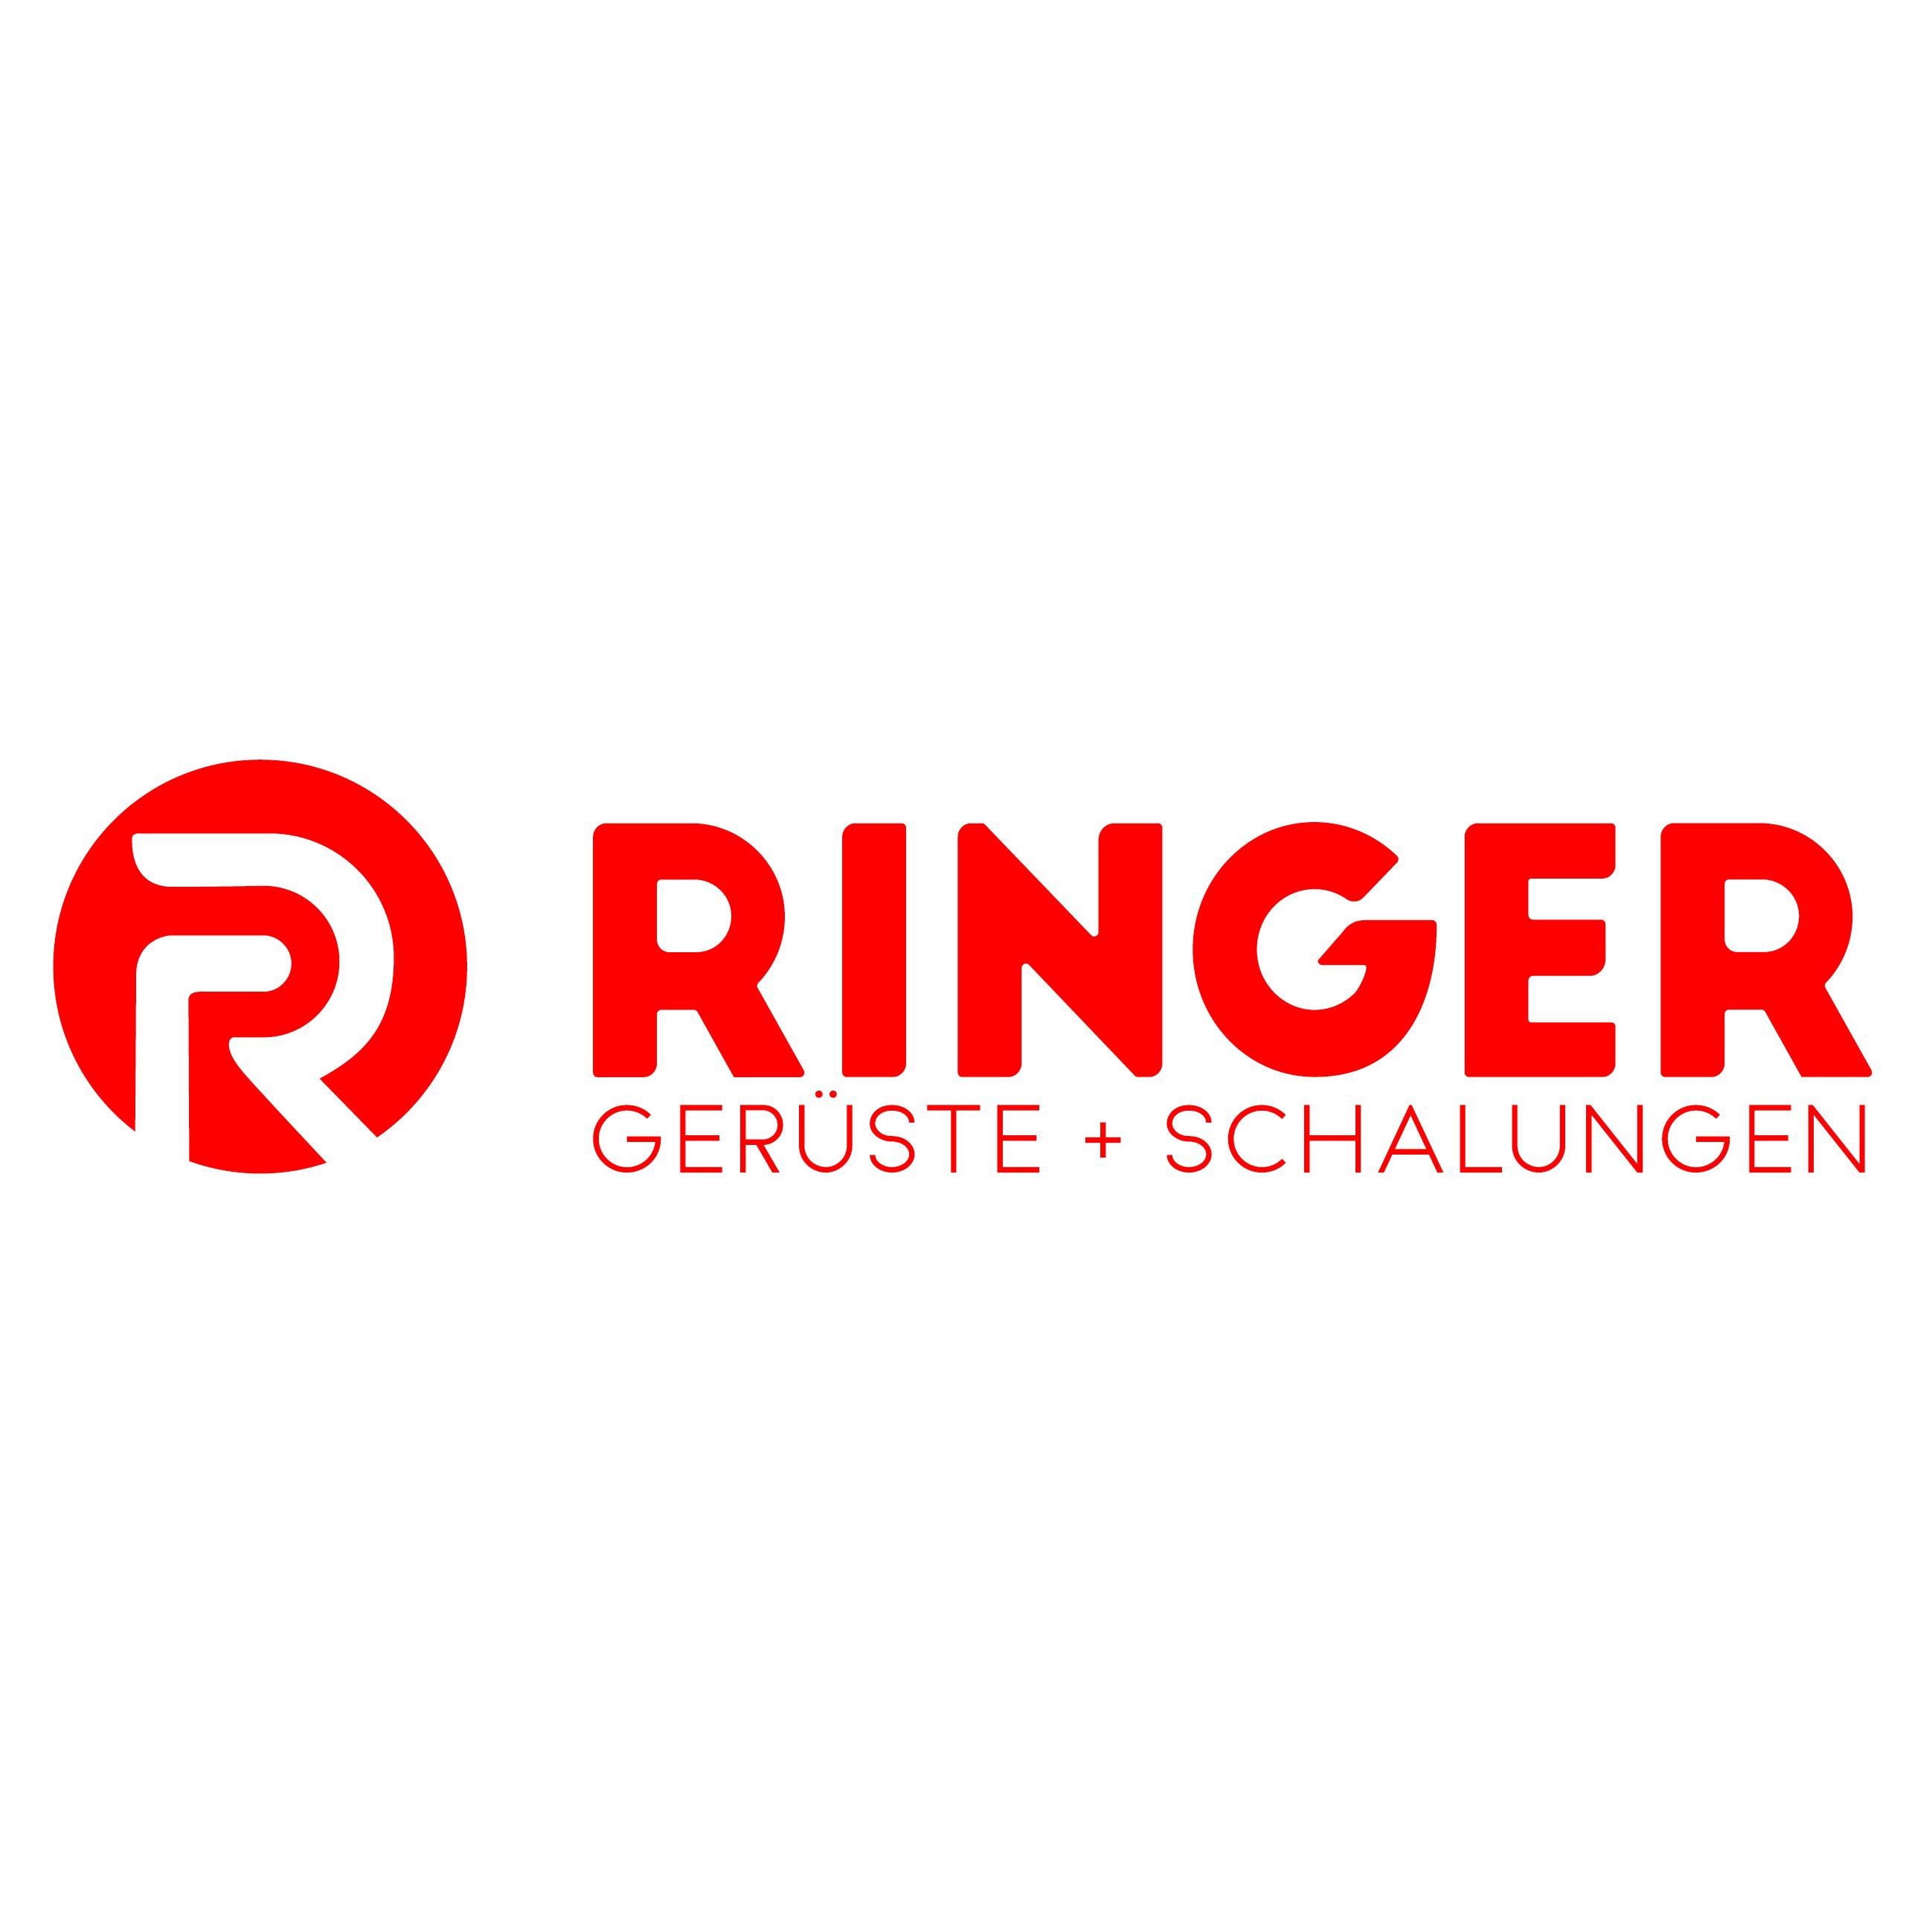 RINGER Gerüste + Schalungen Logo